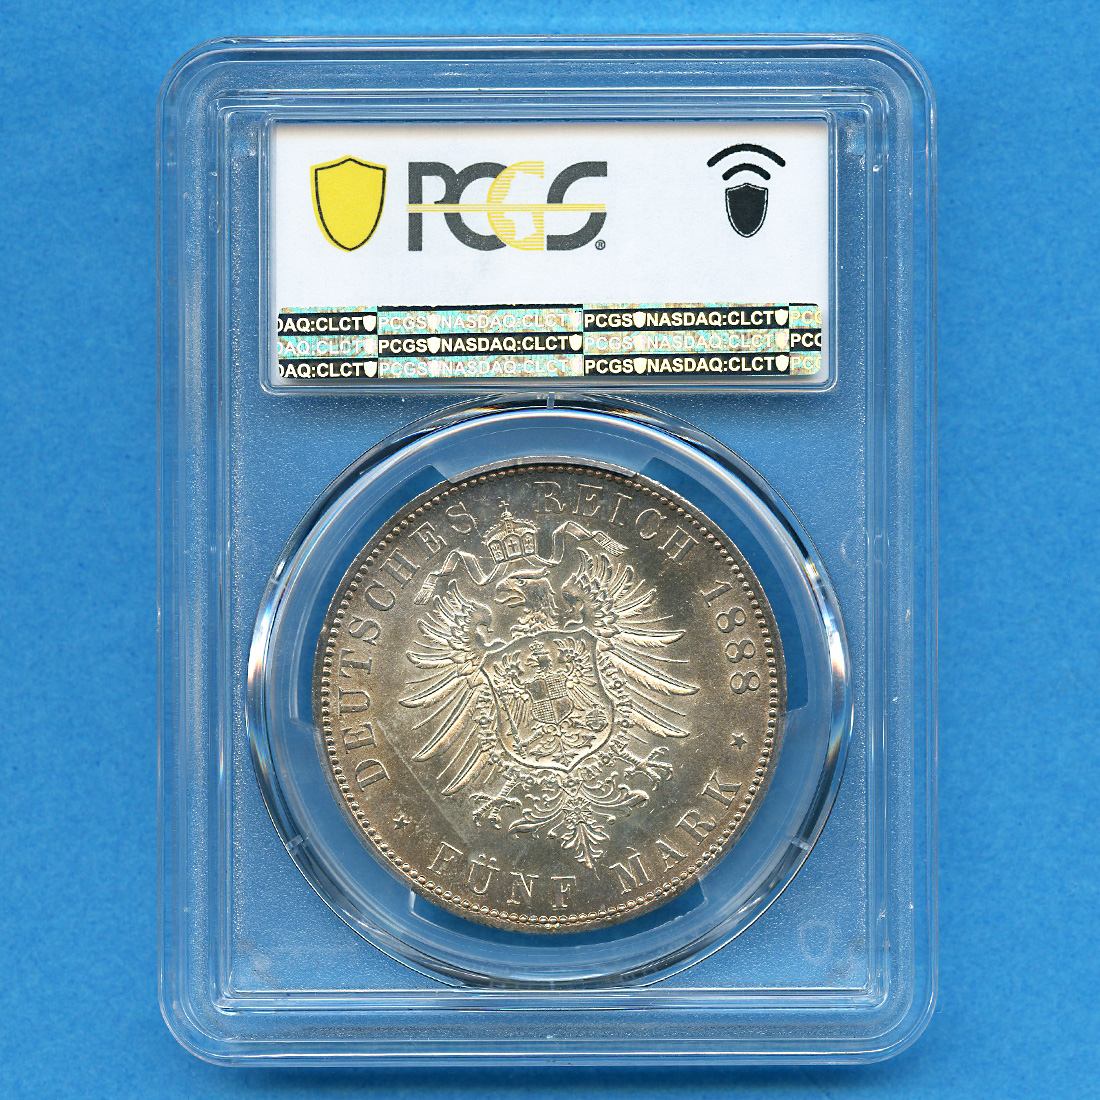 ドイツ ザクセン フリードリヒ・アウグスト3世 2マルク銀貨 、5マルク銀貨-